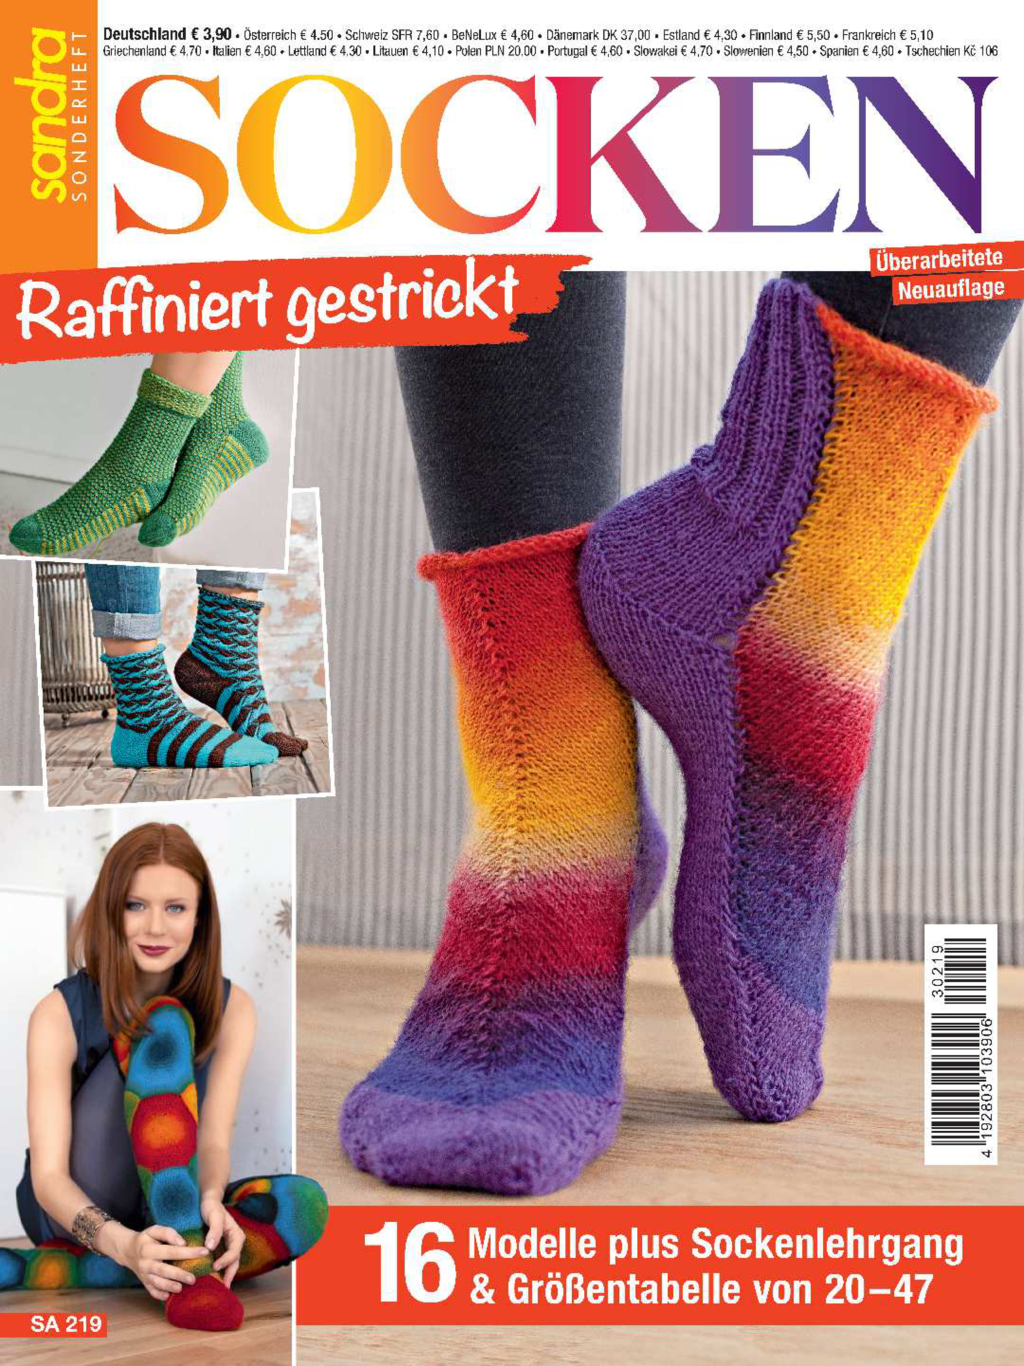 Sandra Sonderheft SA 219 - Socken